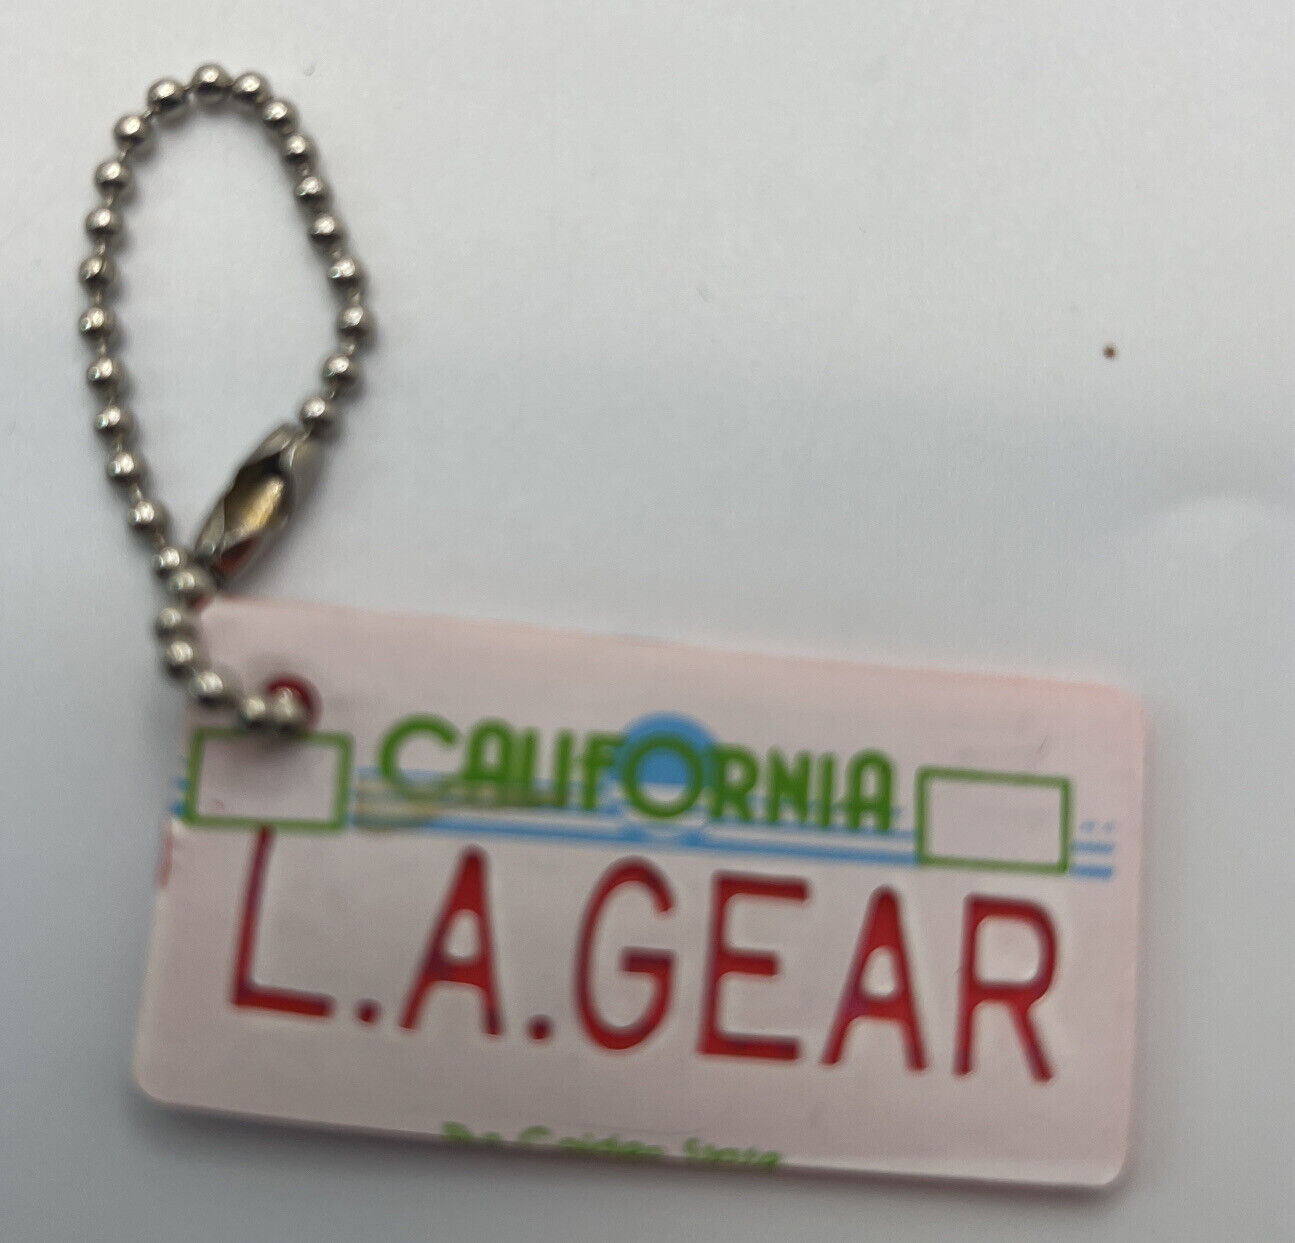 LA Gear Keychain California License Plate 1980s Retro